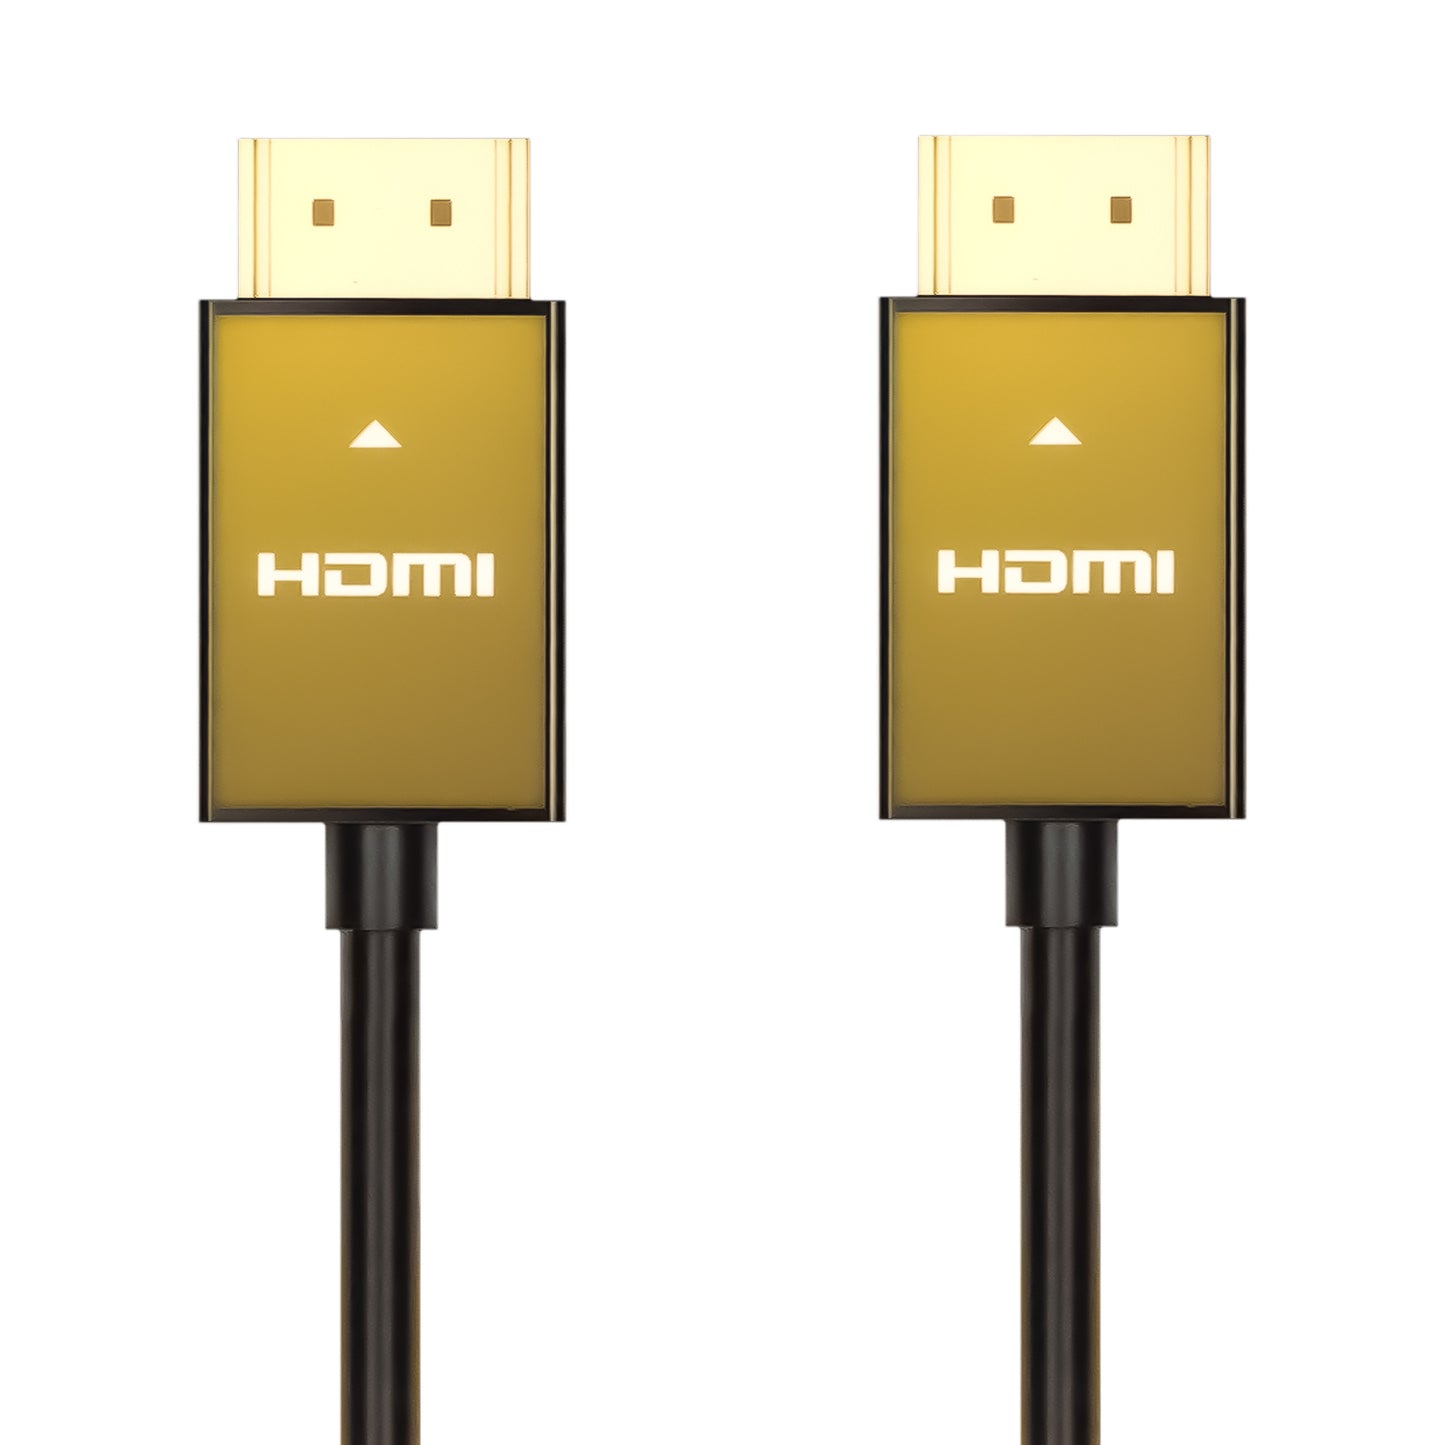 GBC Cavo HDMI 2.1 da 3 metri, supporta 8K a 60Hz, velocità ultra elevata 48 Gbps con ethernet , connettori placcati in oro